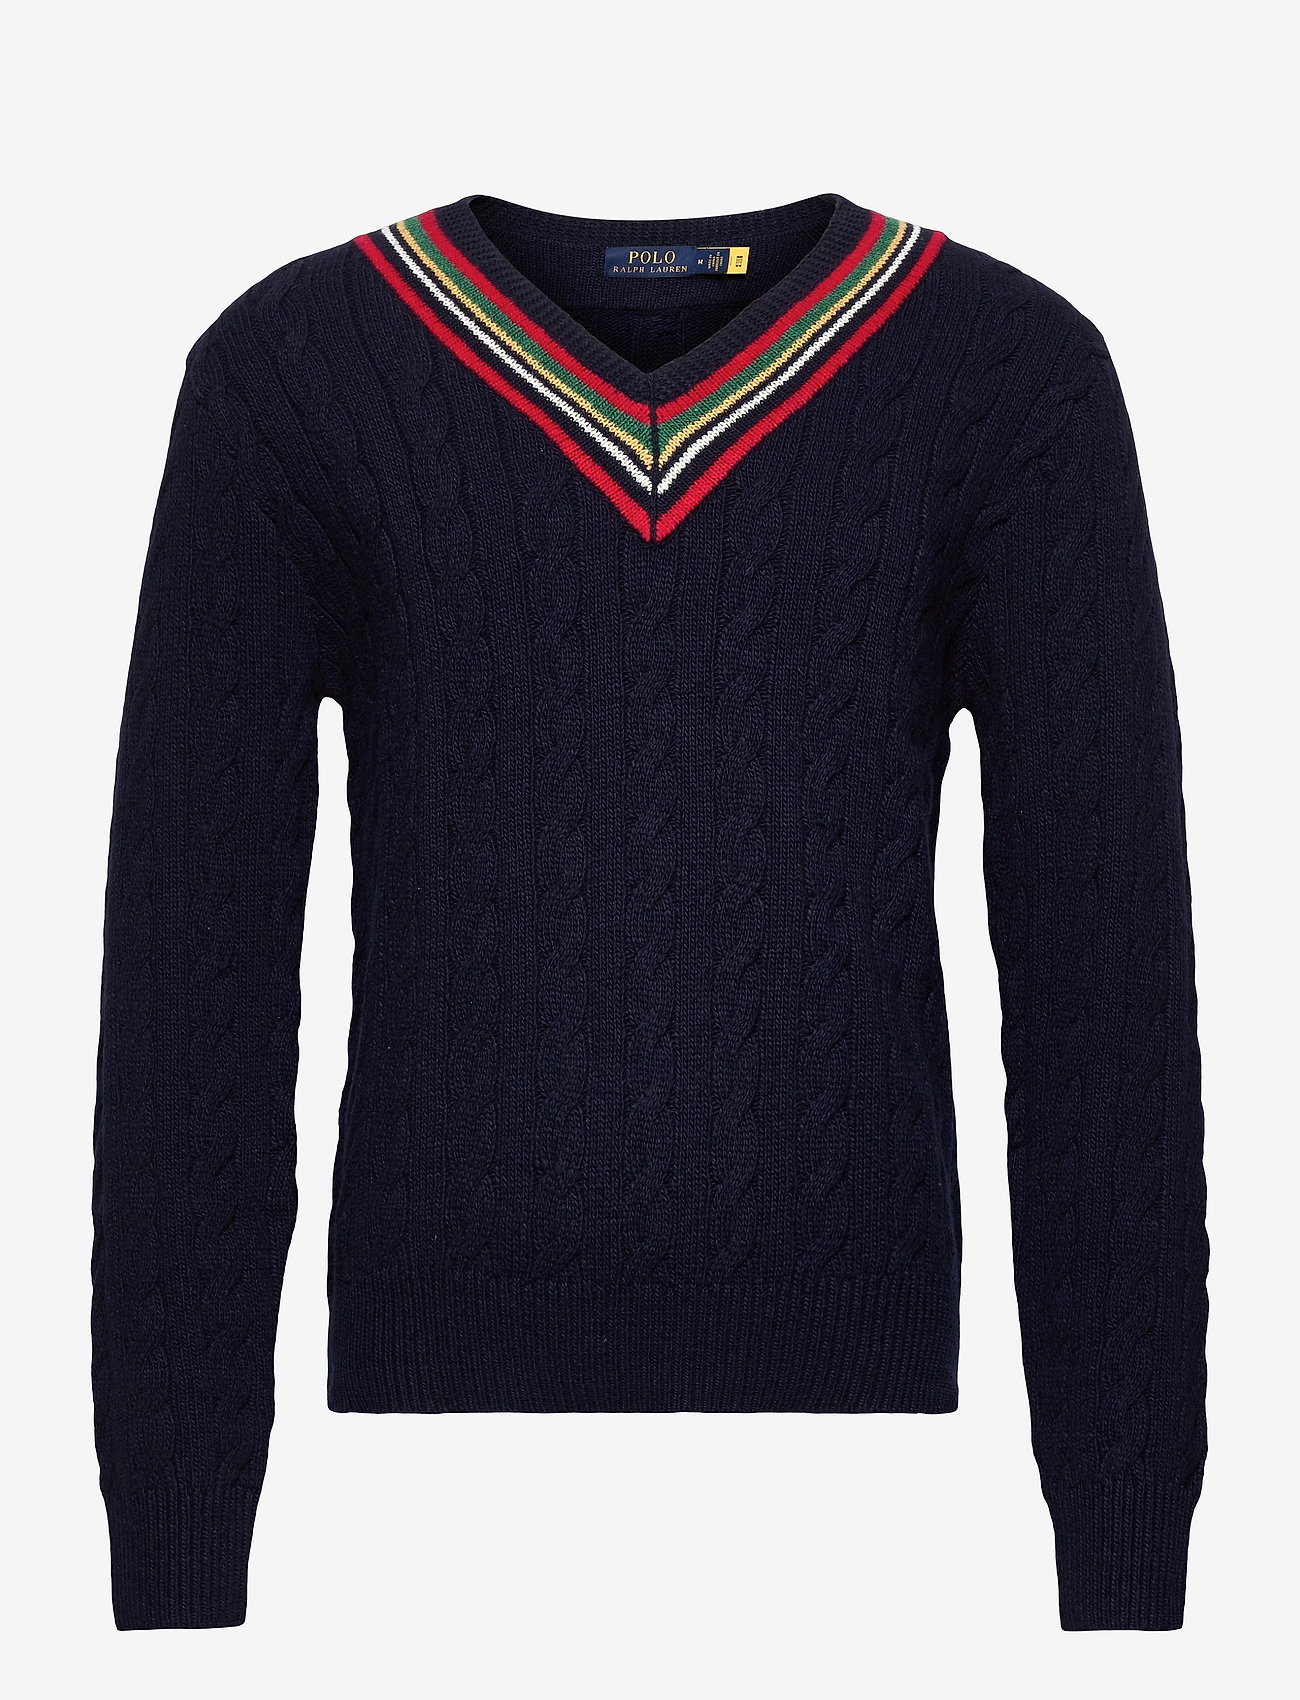 Polo Ralph Lauren - The 67 Cricket Sweater - knitted v-necks - navy multi - 0